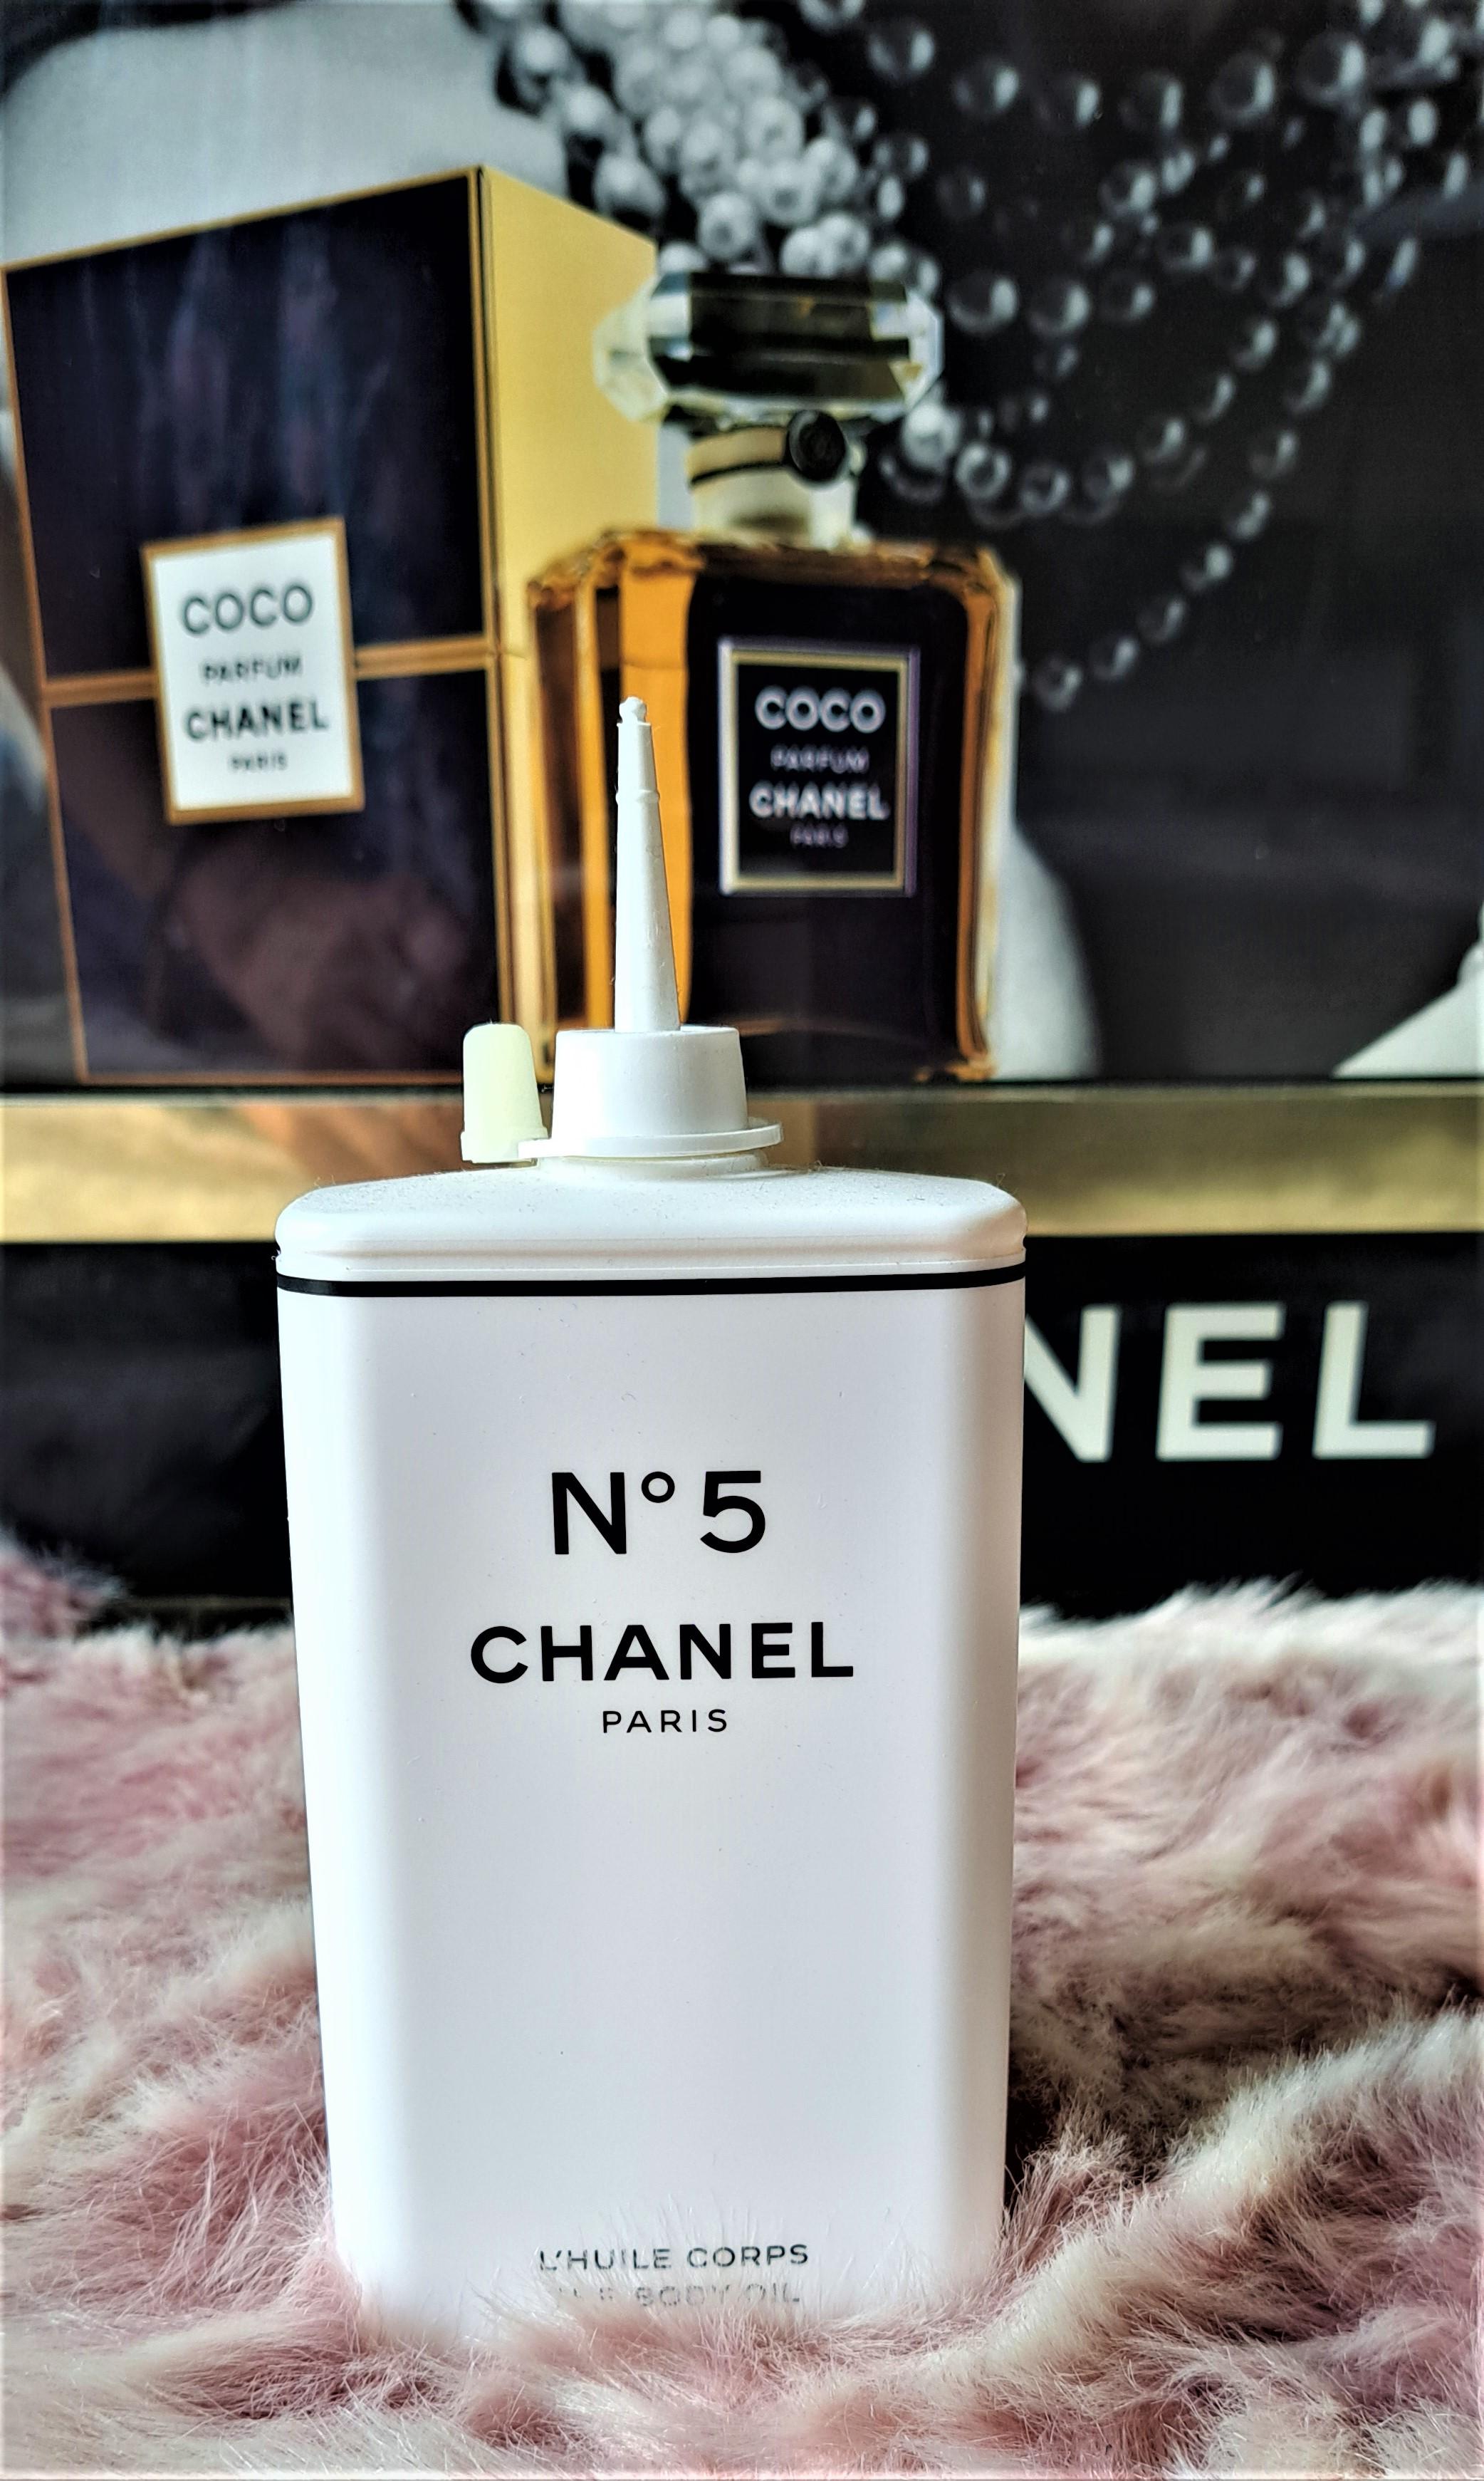 Limited Edition Chanel Paris Factory No. 5 L'eau Water Bottle White Black  590ML